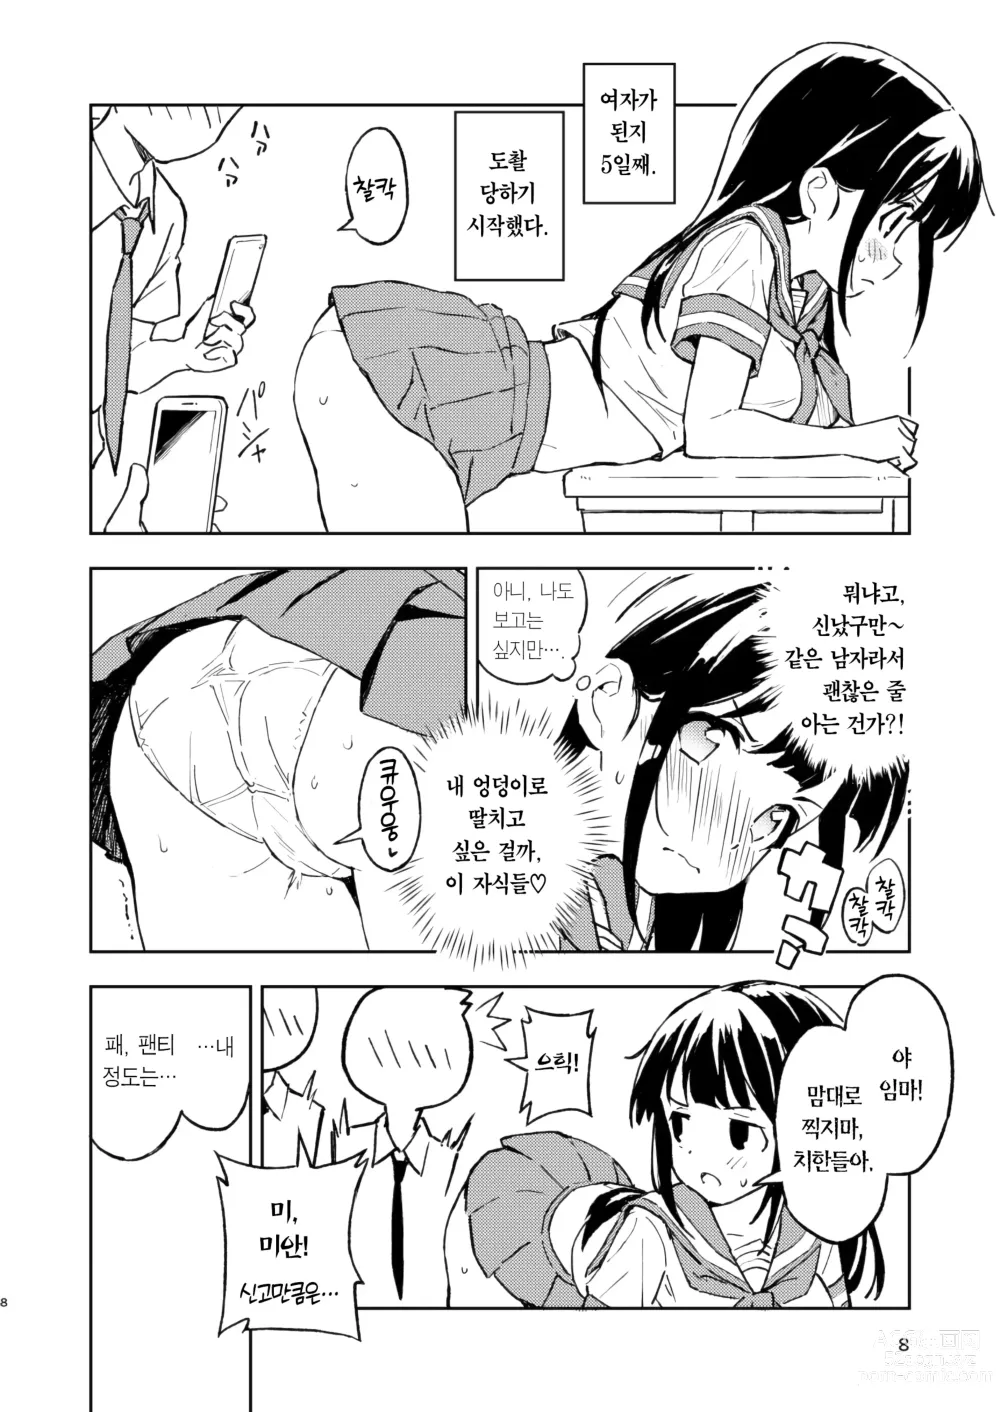 Page 8 of doujinshi 한 달 안에 임신 못하면 남자로 돌아가는 이야기